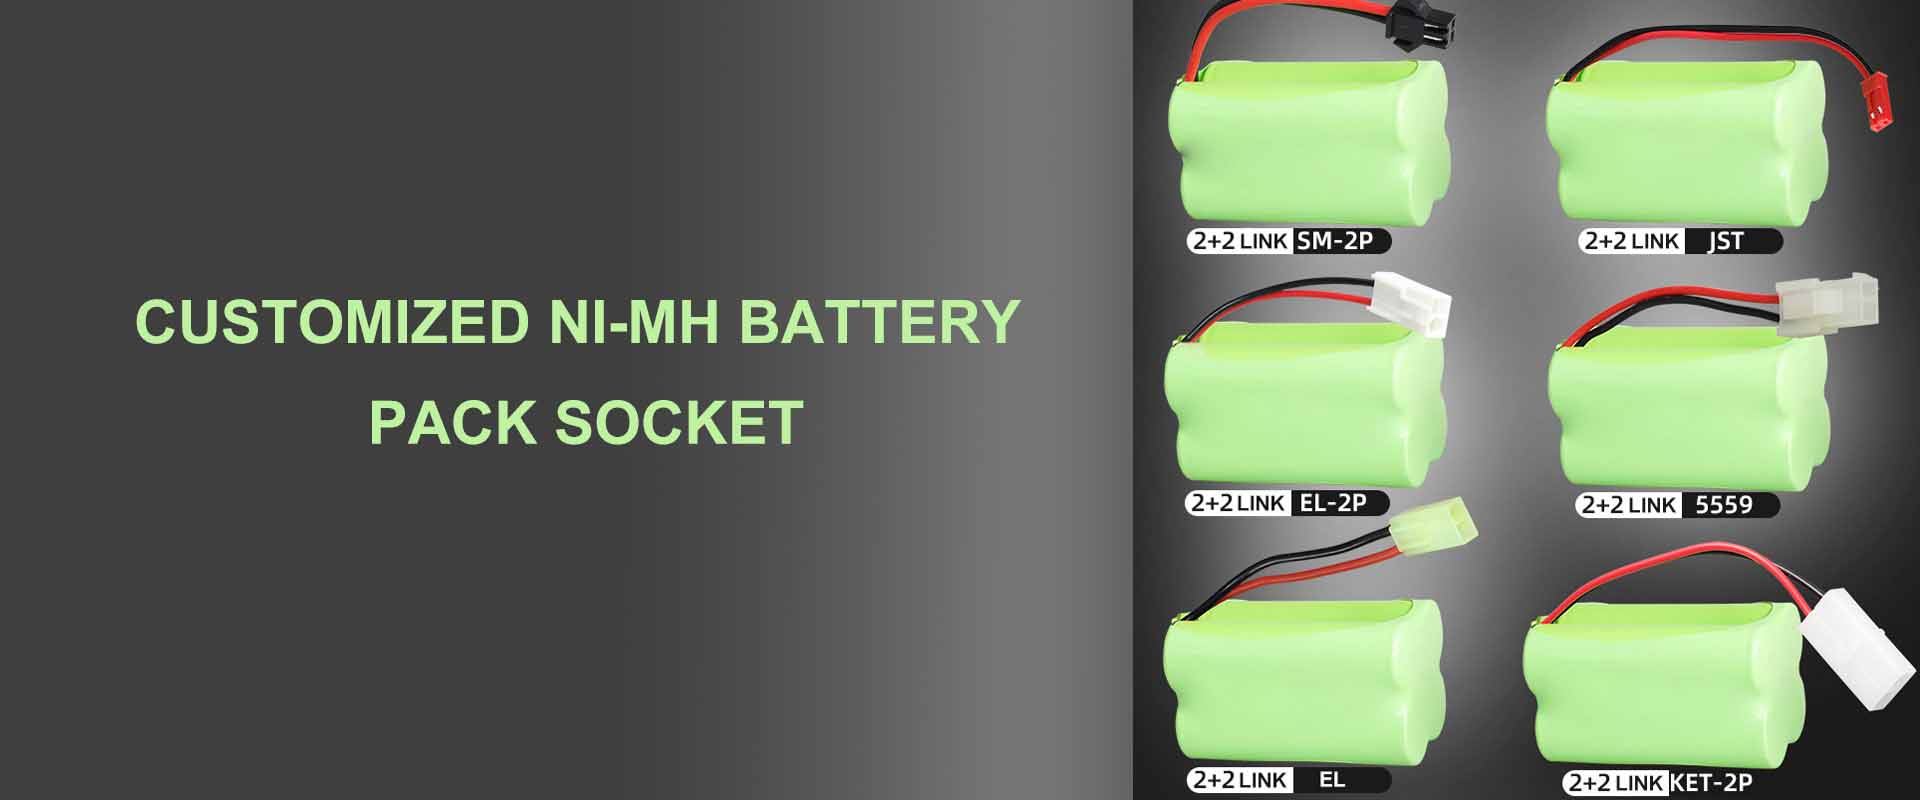 Preguntes freqüents sobre com condicionar i utilitzar la bateria de NiMH